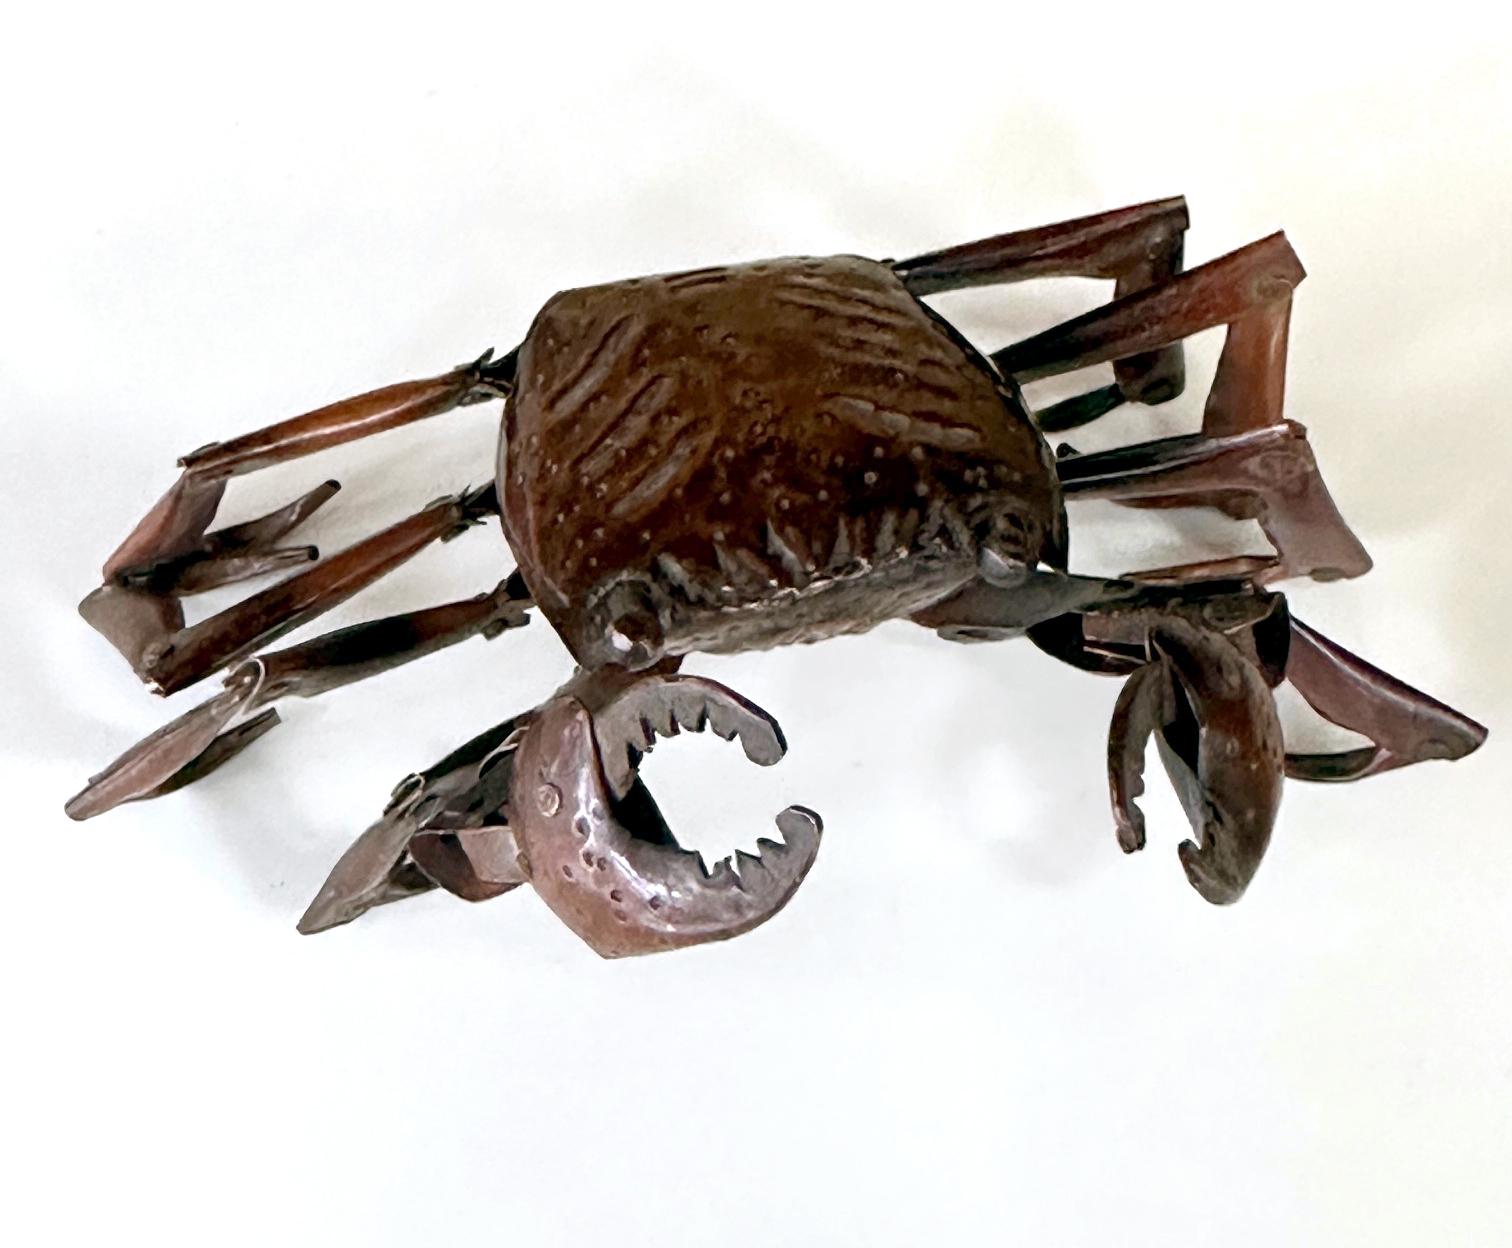 Eine kleine Krabbe aus Kupfer mit beweglichen Beinen, hergestellt von Myochin Hiroyoshi in der späten Meiji-Periode, um 1890-1900. Diese Art von Kleinplastik mit beweglichen Teilen ist im Japanischen als Jizai Okimono bekannt und dient als